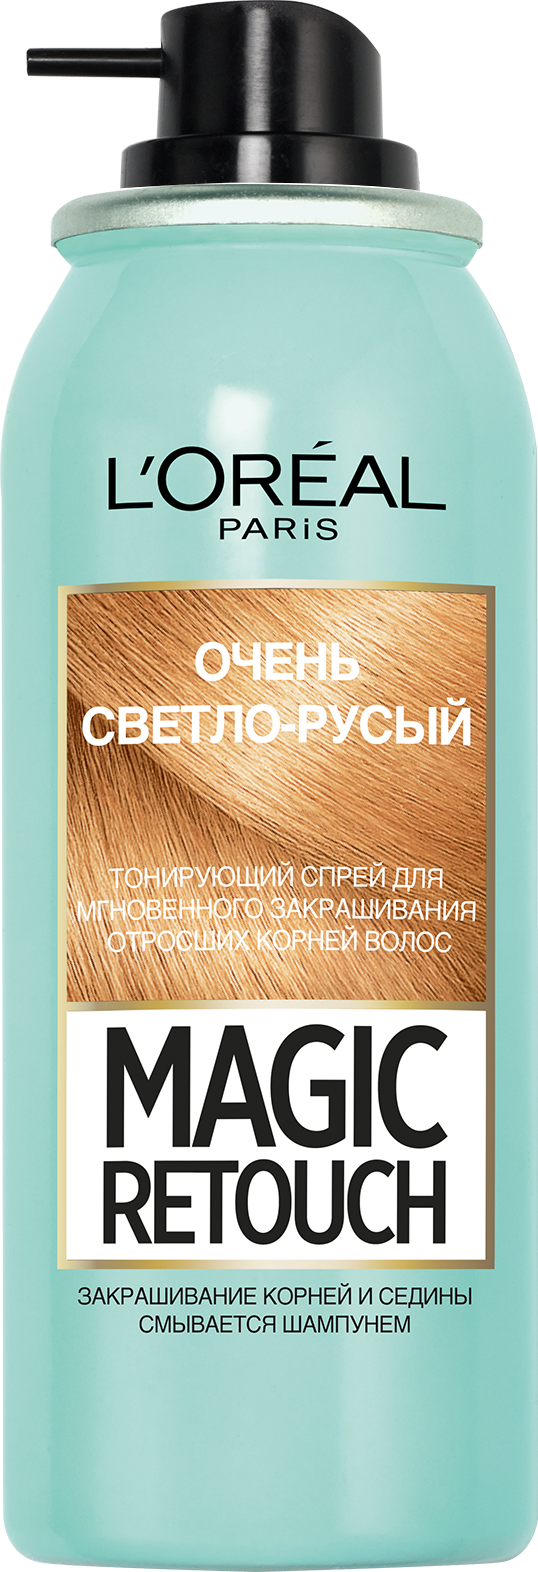 Тонирующий спрей для волос L'Oreal Paris Magic Retouch, тон 09 (очень светло-русый), 75 мл - фото 3